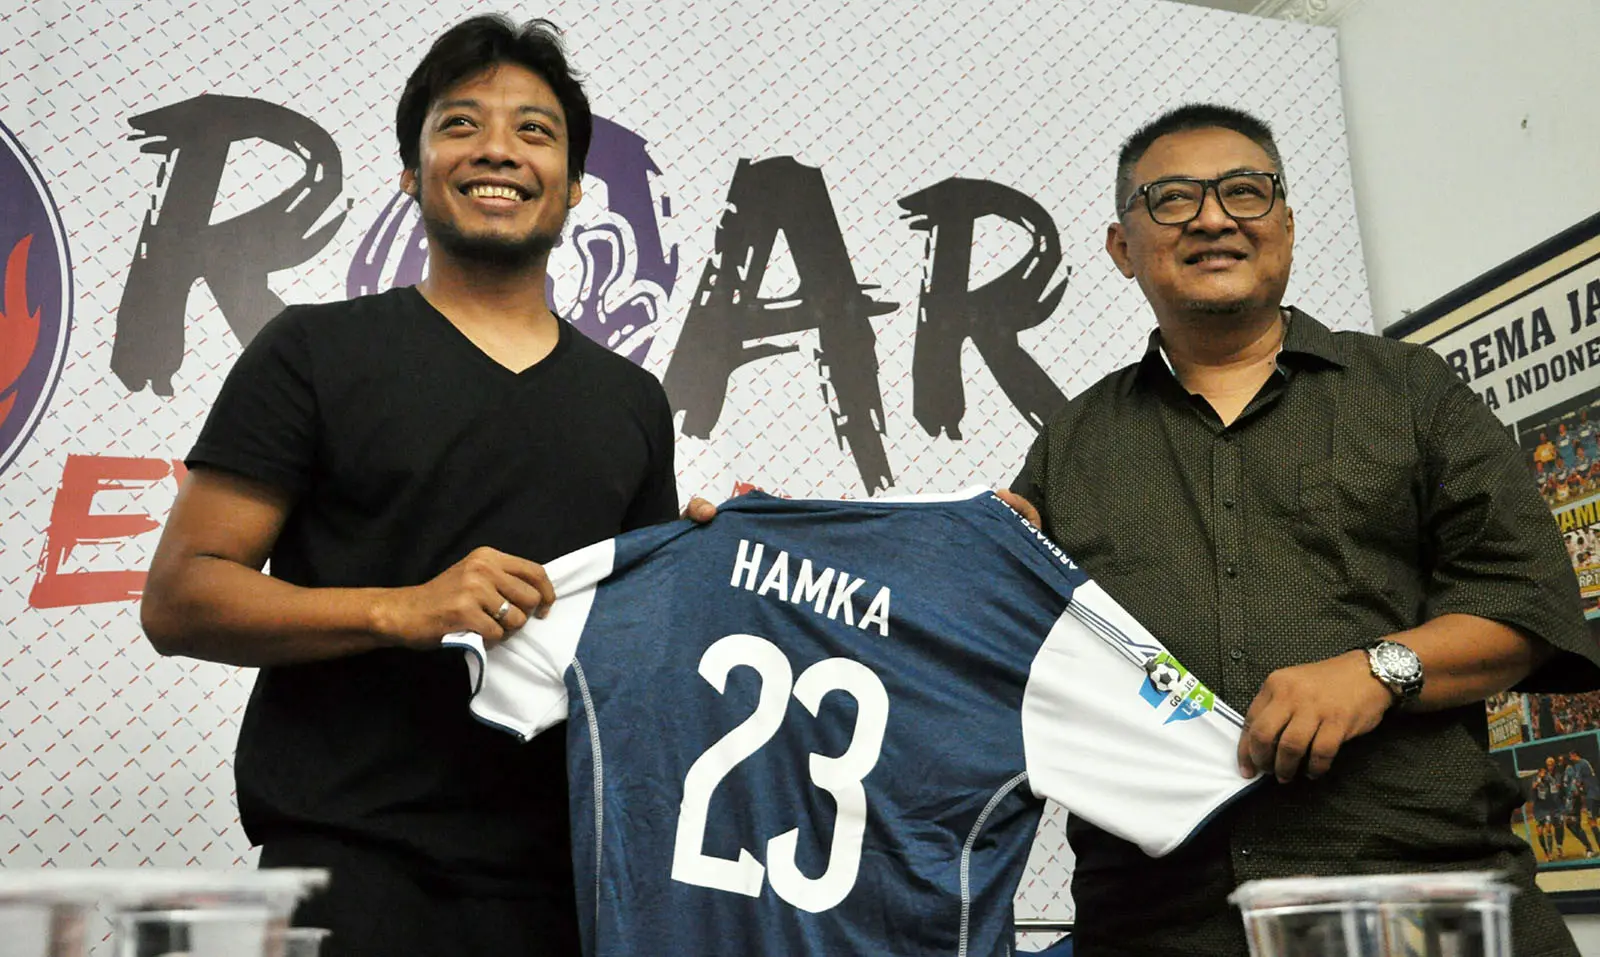 Hamka Hamzah kembali diperkenalkan sebagai pemain Arema di kantor manajemen Arema di Malang, Jumat (13/7/2018). (Bola.com/Iwan Setiawan)